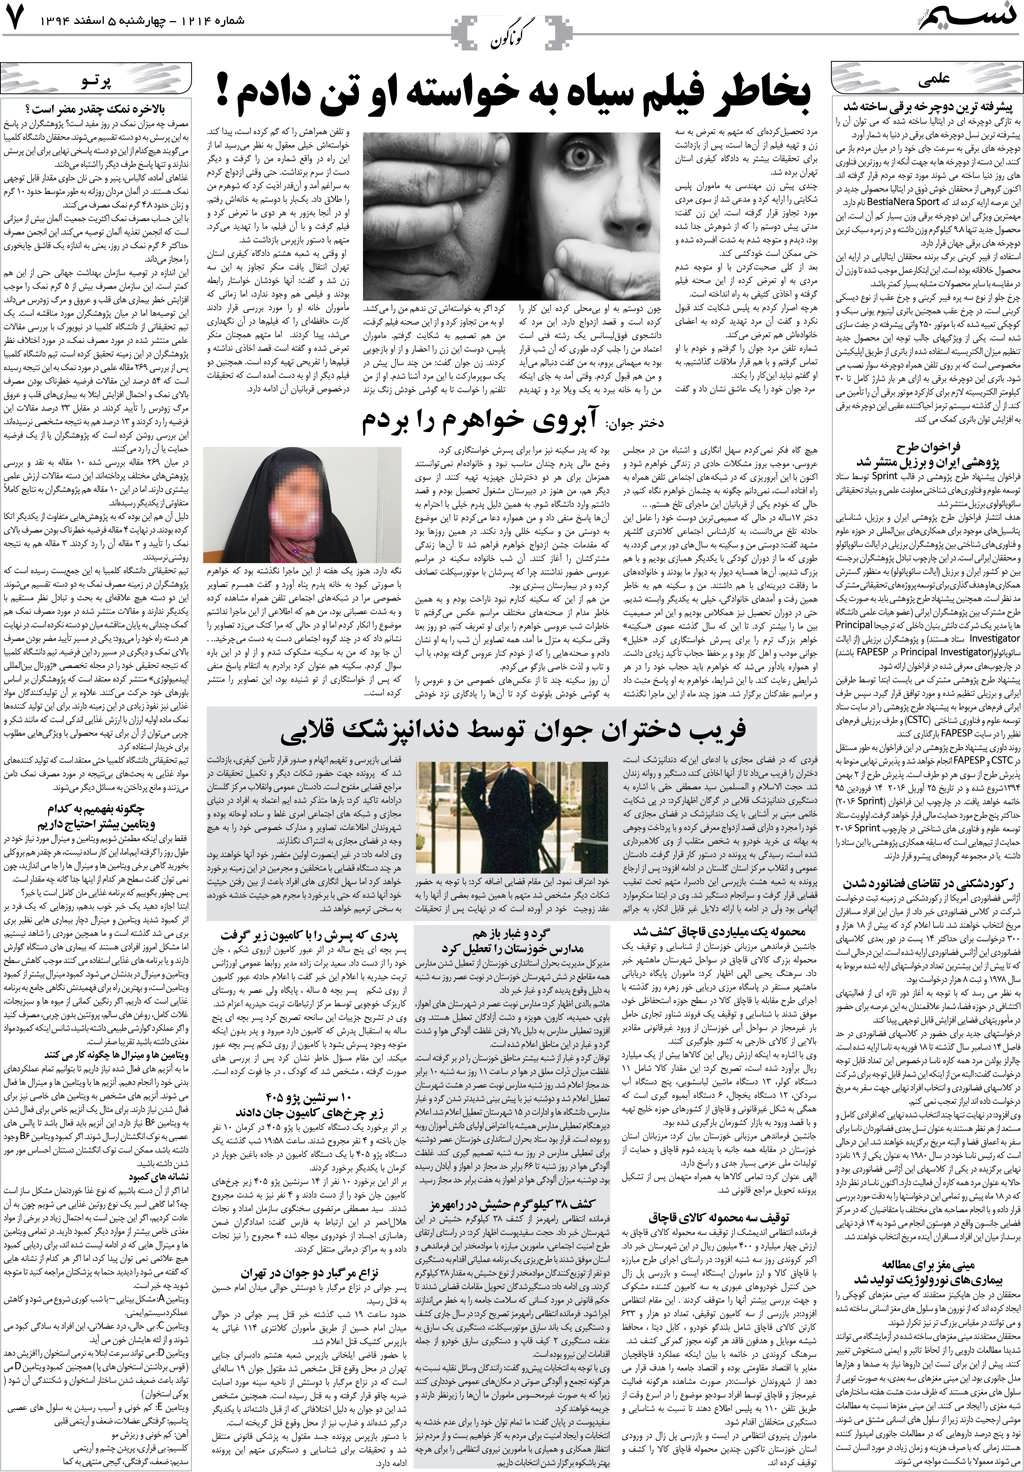 صفحه گوناگون روزنامه نسیم شماره 1214